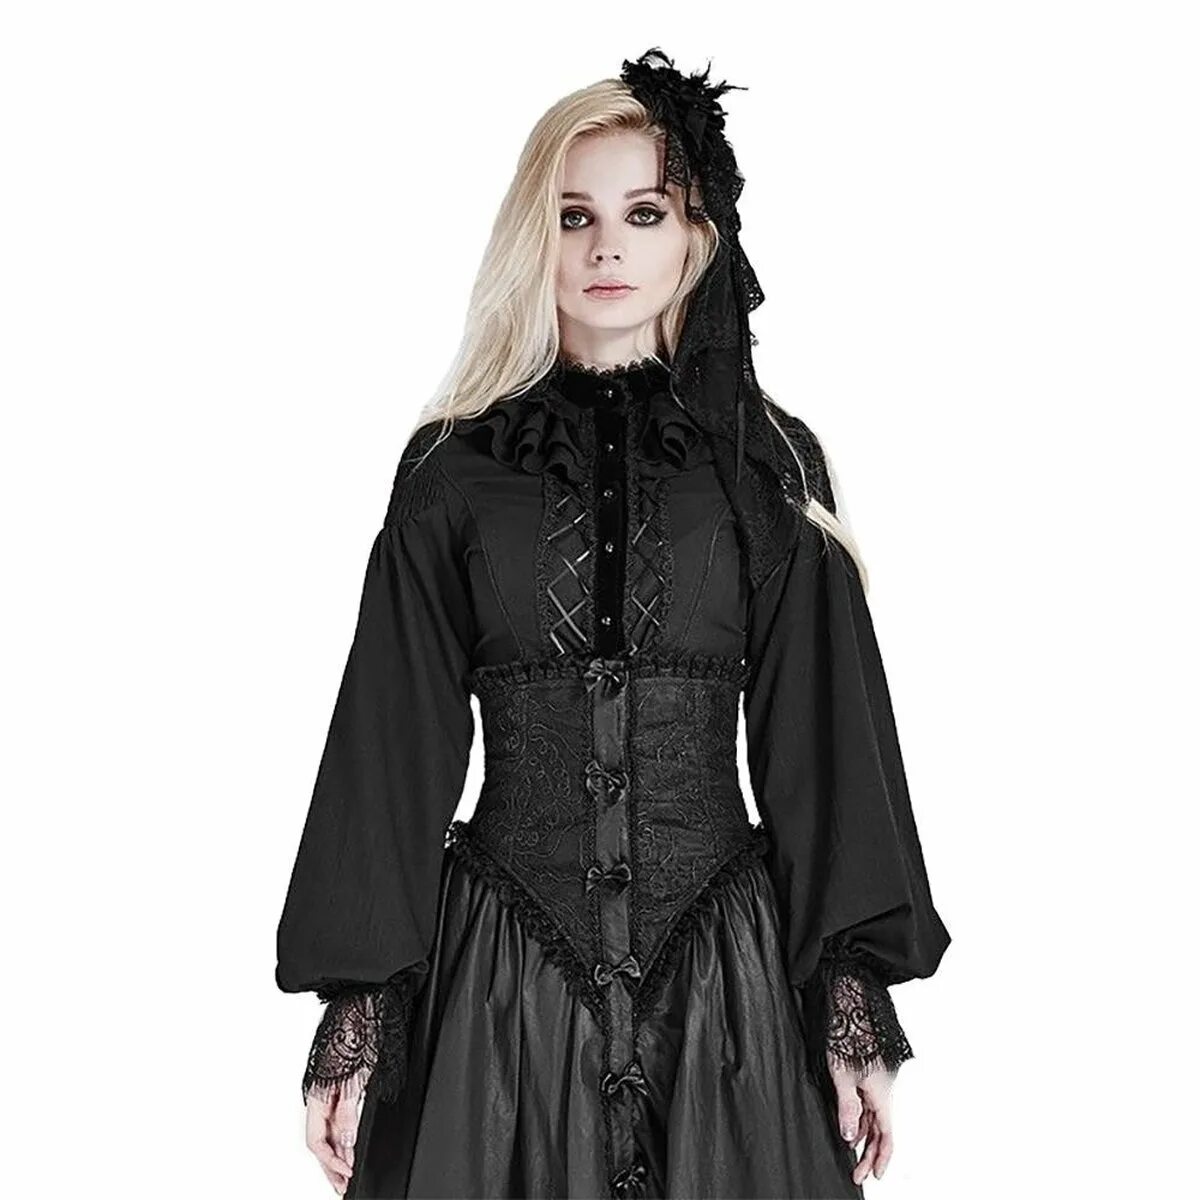 Victorian Vampire goth стиль. Платье в готическом стиле. Готический стиль в одежде.